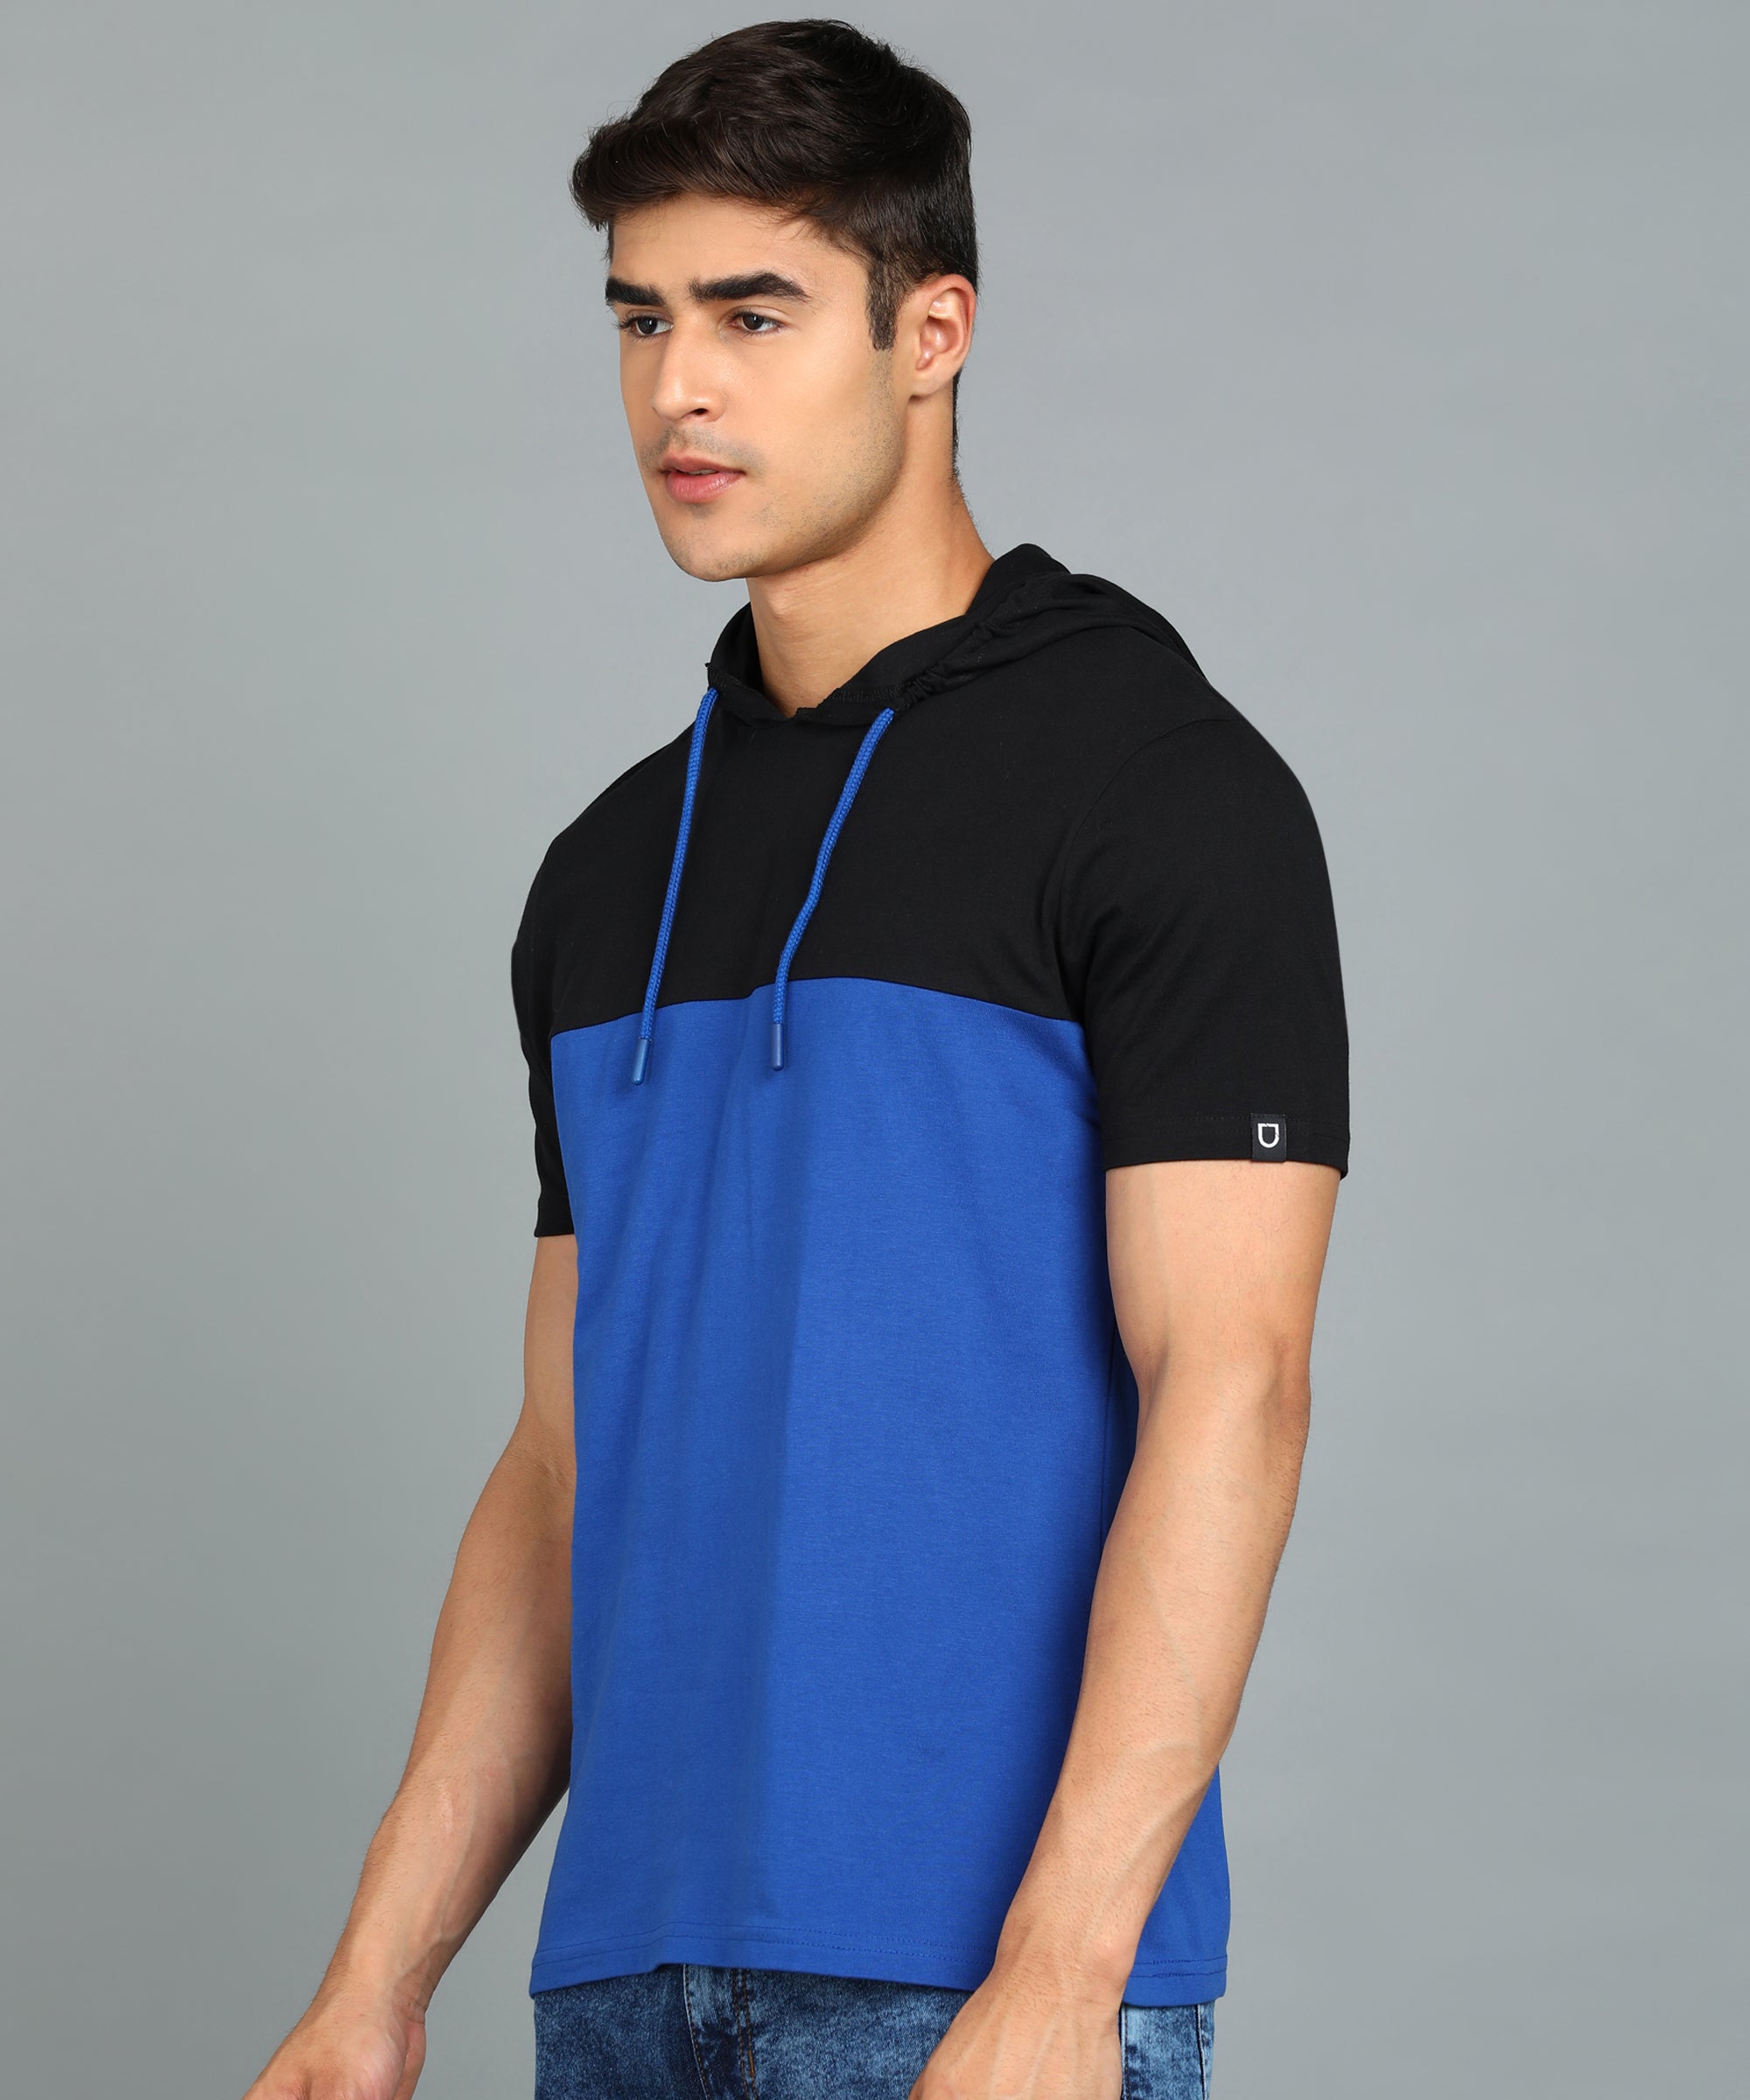 Urbano Fashion Men's Black, Royal Blue Cotton Slim Fit Half Sleeve Hooded T-Shirt